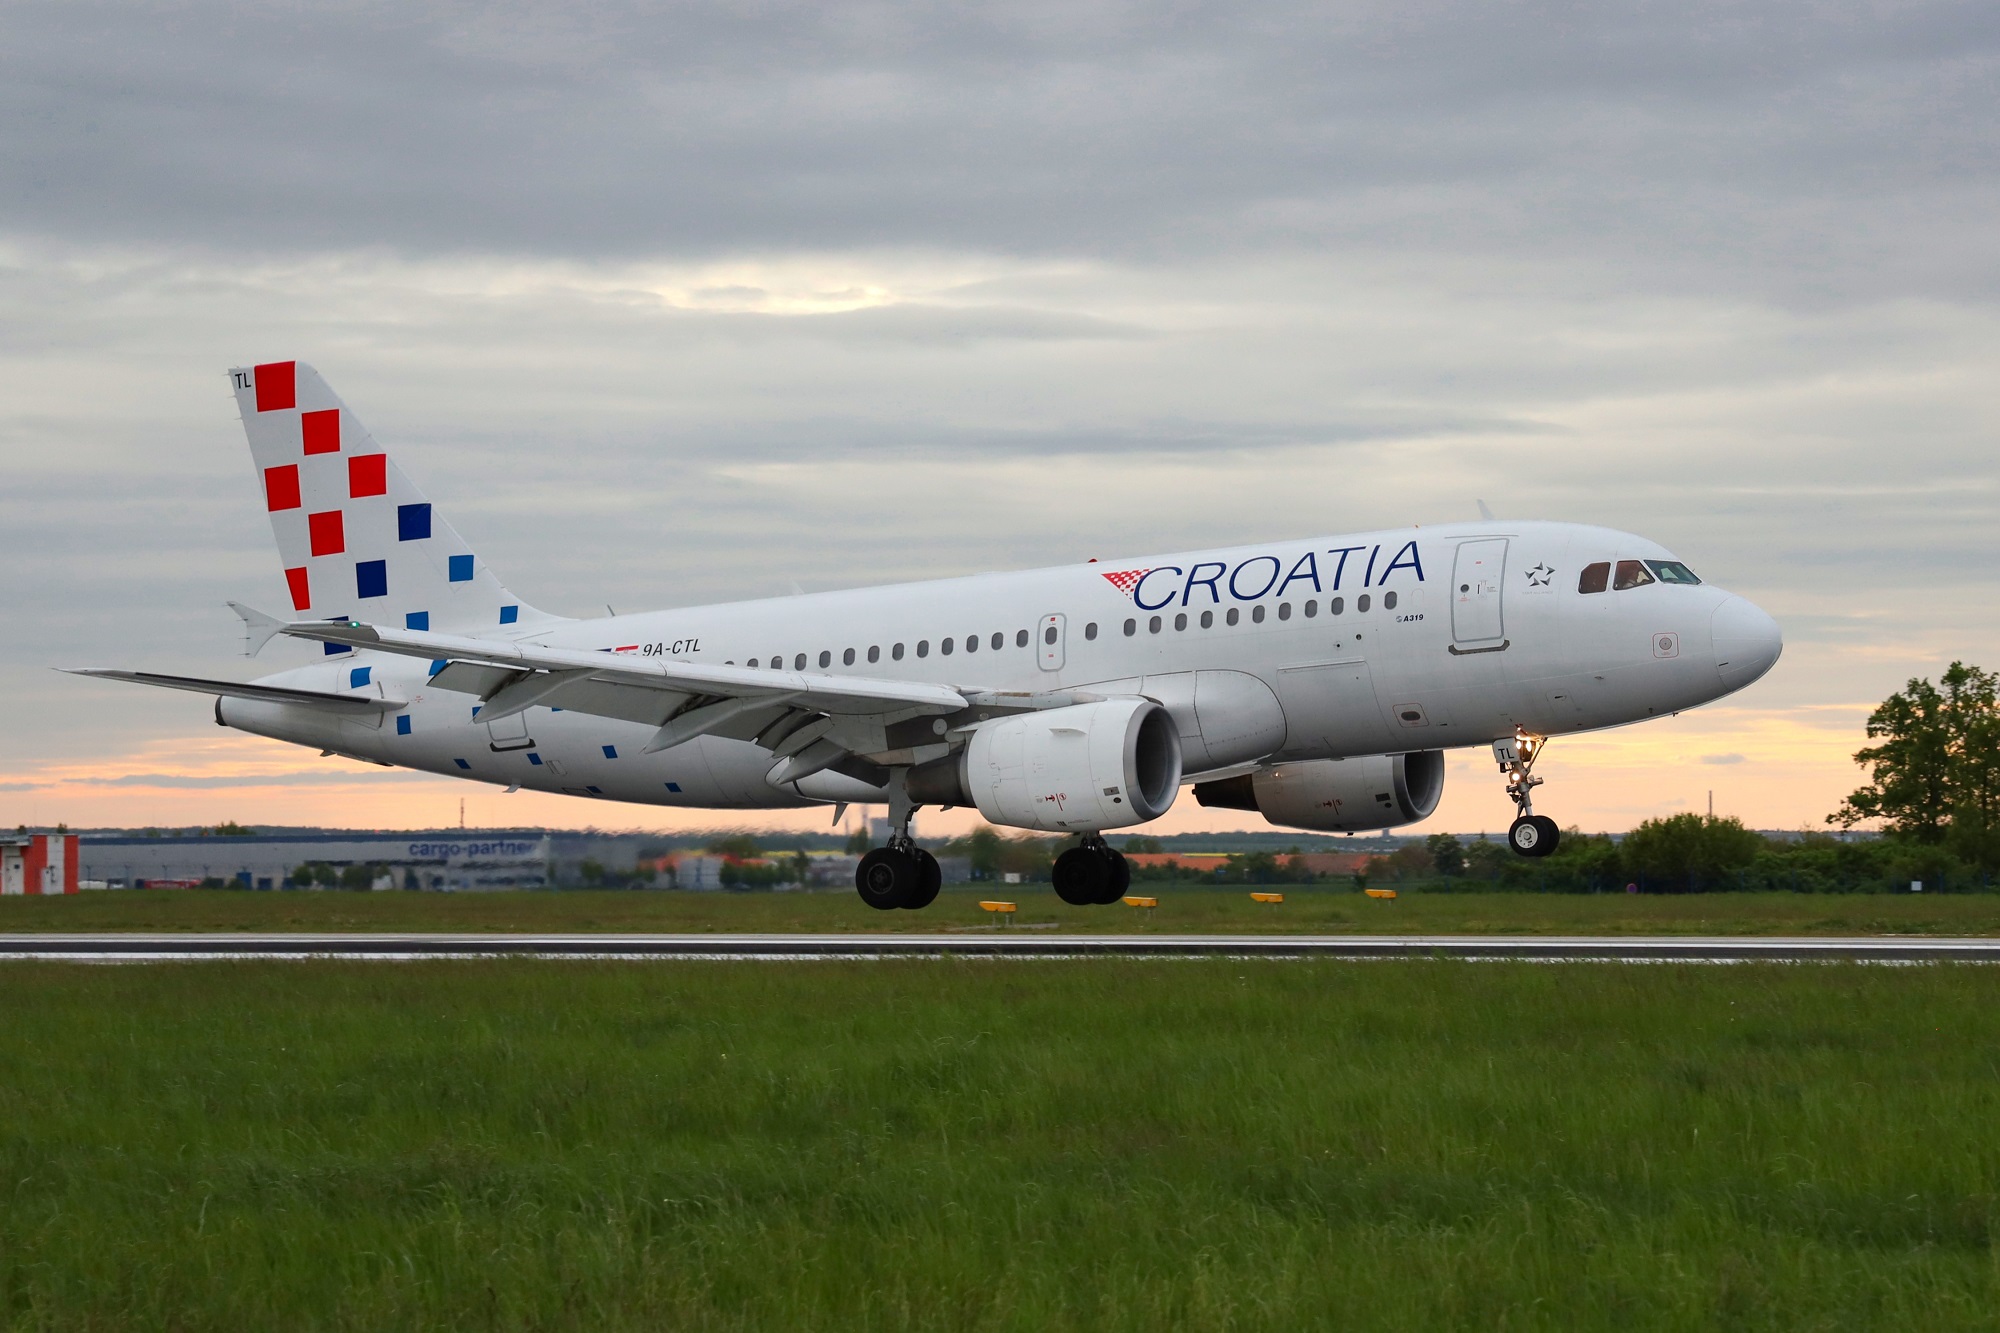 Slavnostní přivítání nové linky Croatia Airlines z Dubrovníku do Prahy na ruzyňském letišti. Zdroj: Letiště Praha